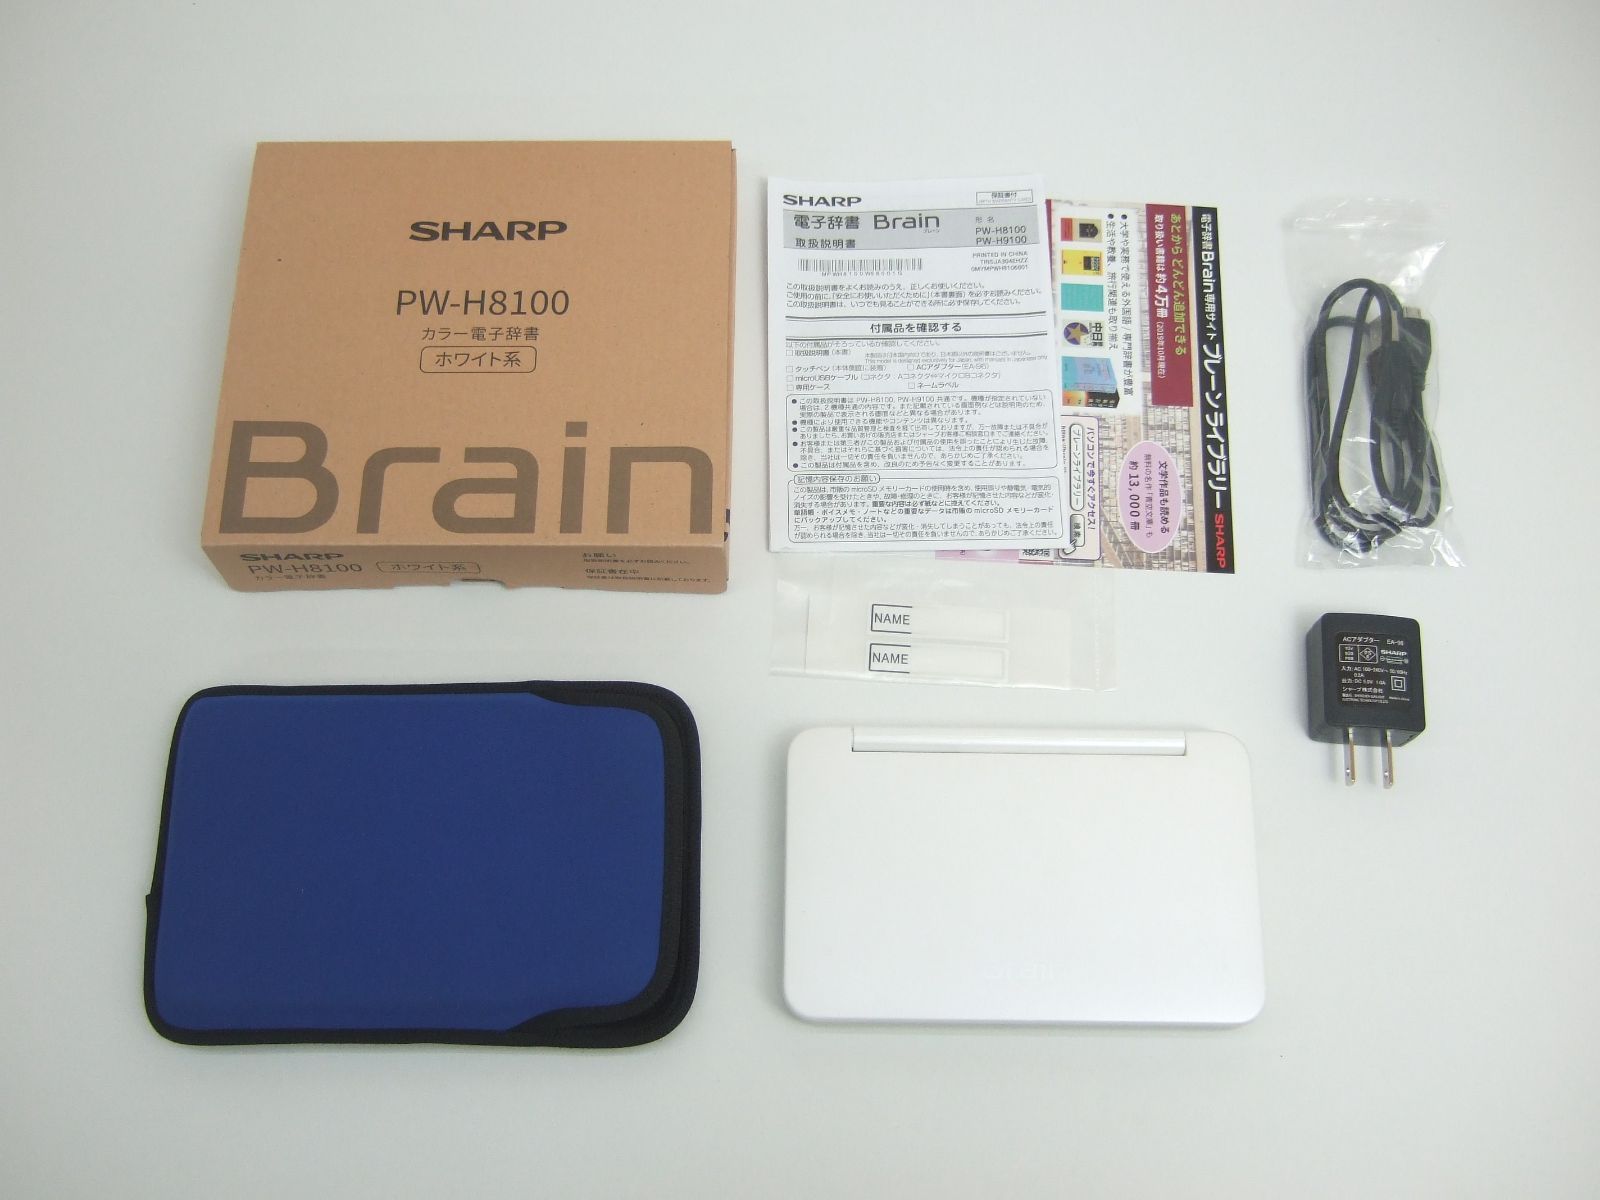 電子辞書 Brain SHARP(PWーH8100) - 電子書籍リーダー本体